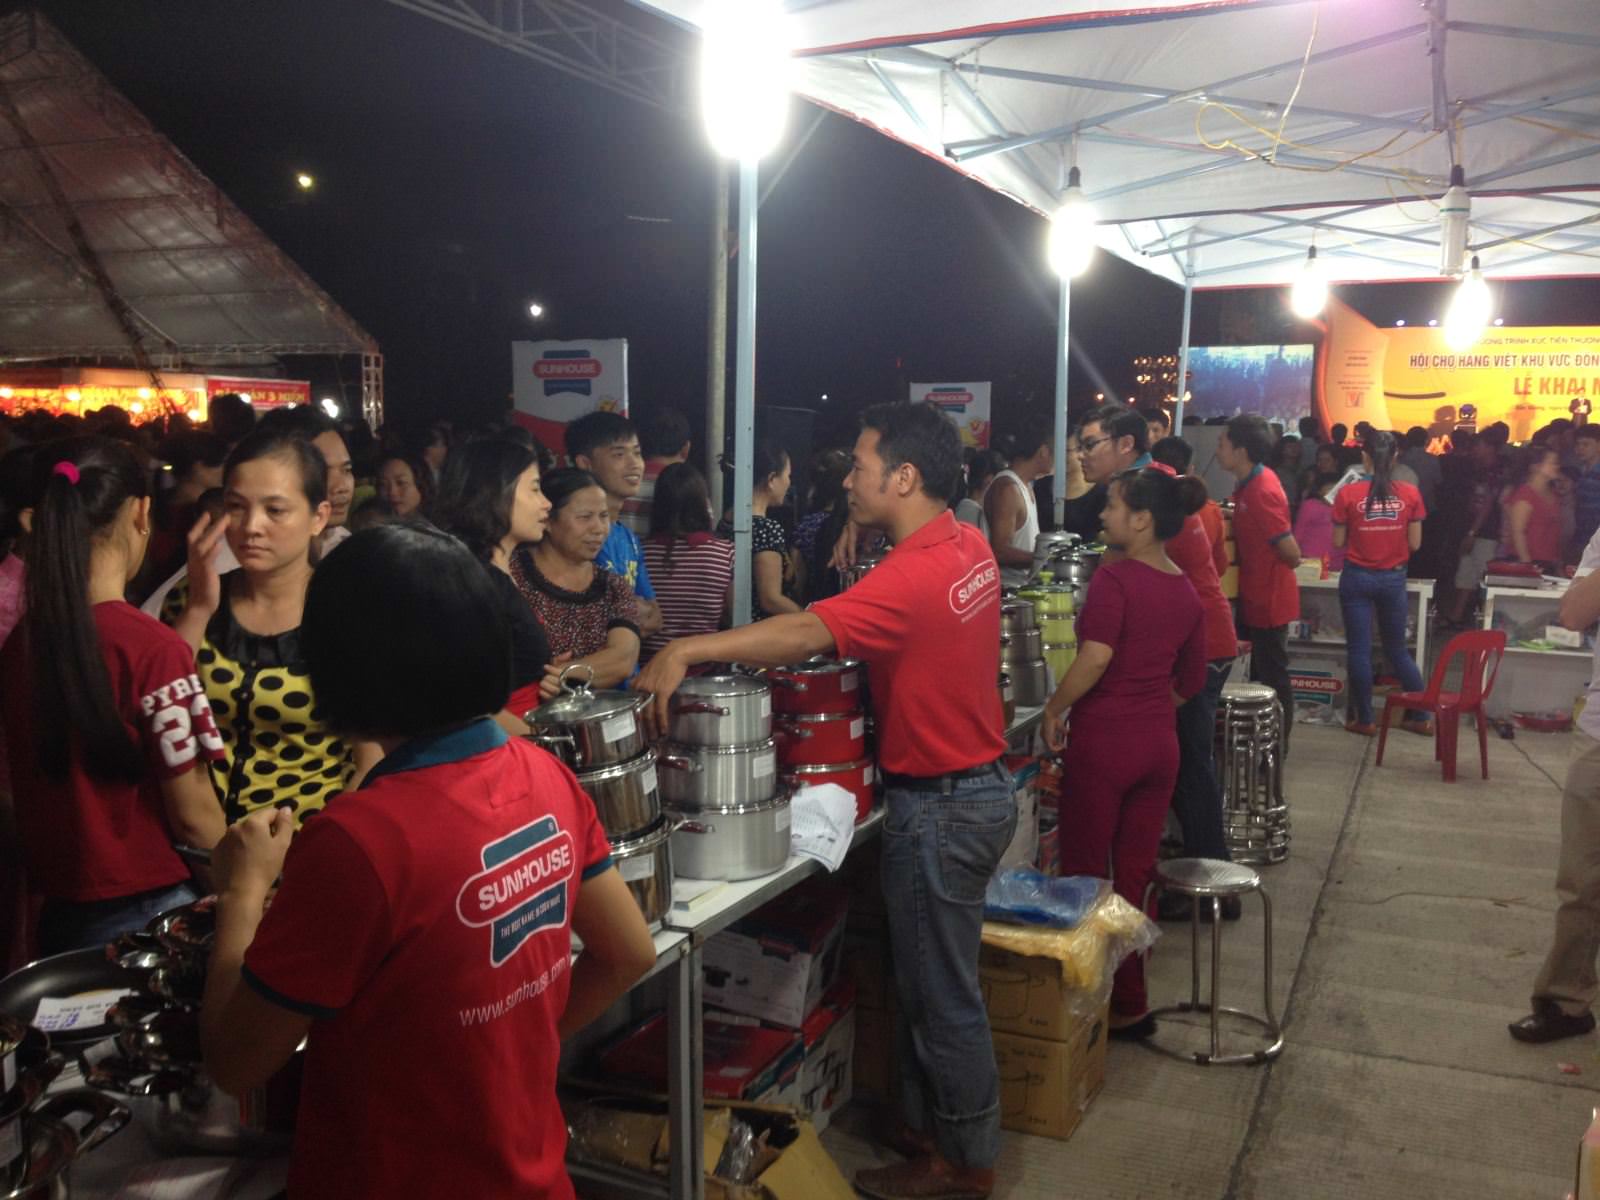 Tập đoàn Sunhouse tổ chức chương trình “Tri ân khách hàng” tại Hội chợ Hàng Việt khu vực Đông Bắc-Bắc Giang 2013 2